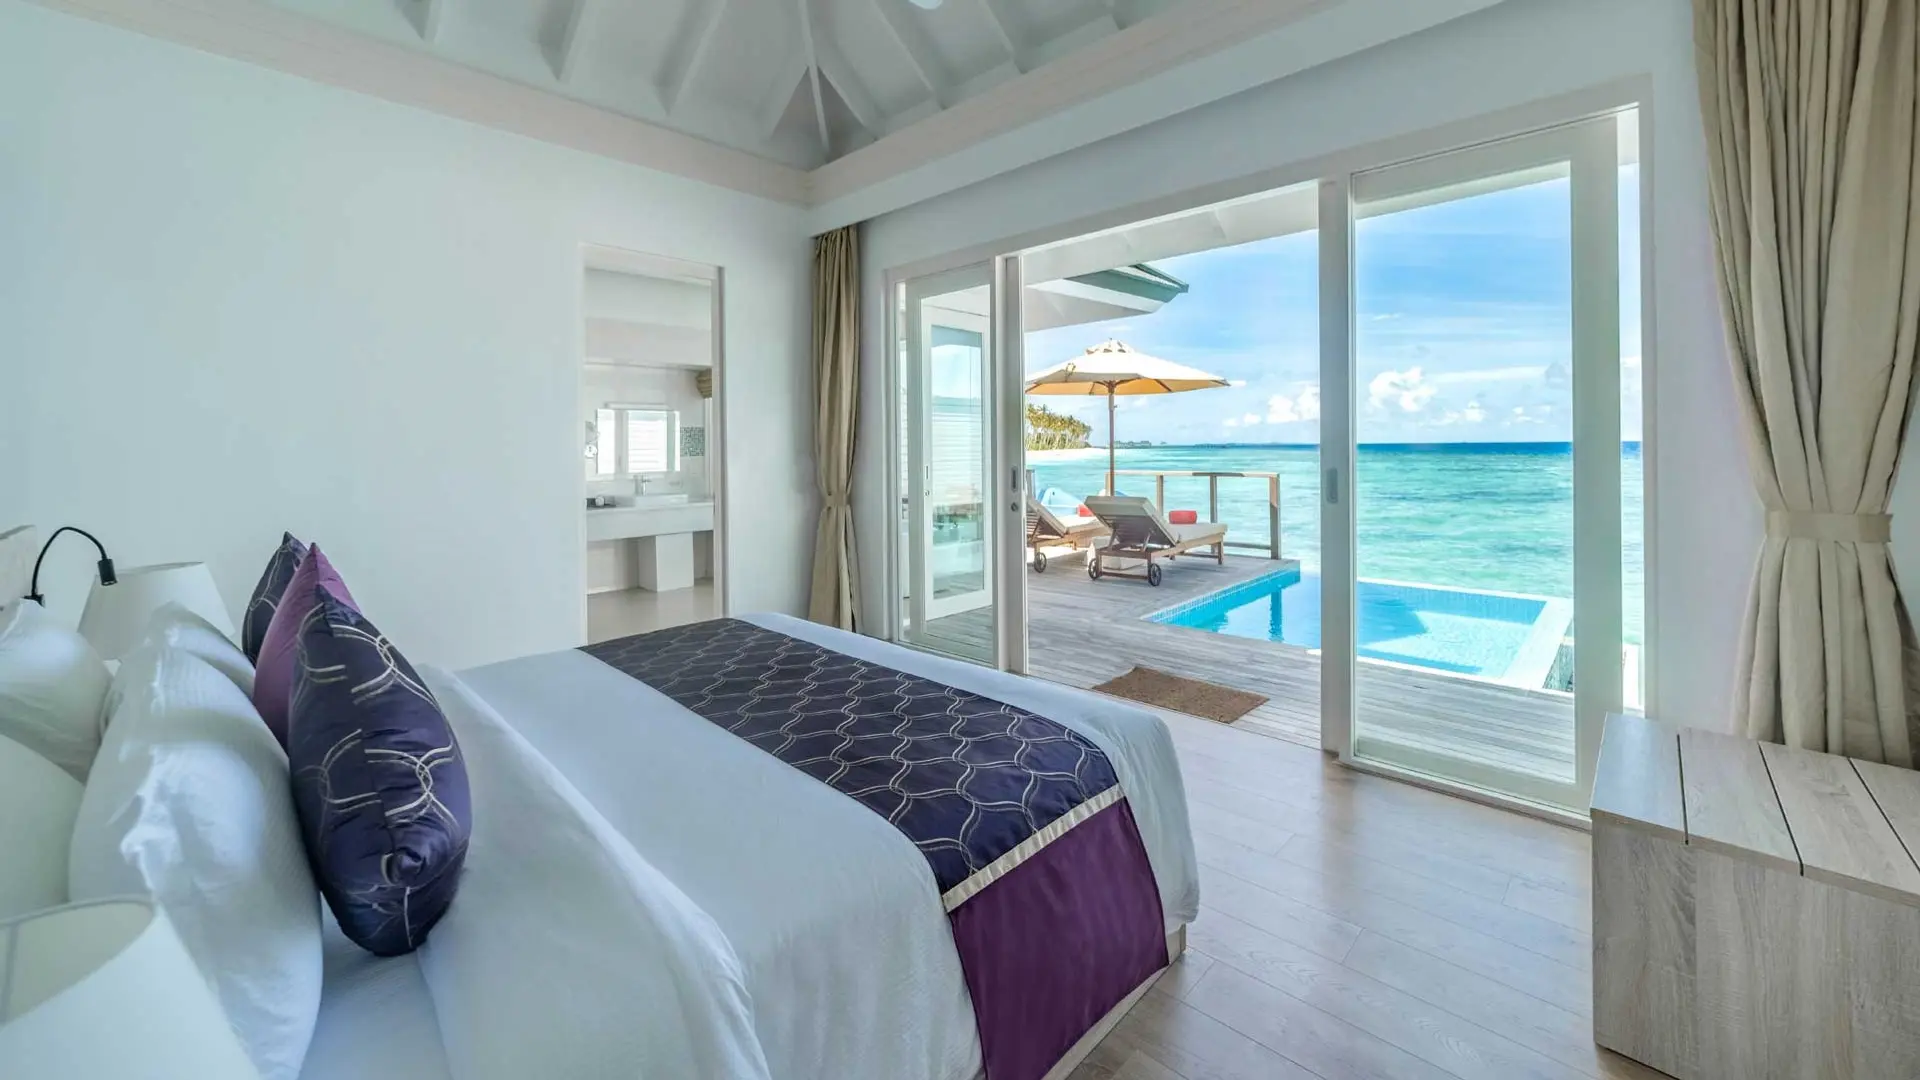 Hotel review Accommodation' - Siyam World Maldives - 14